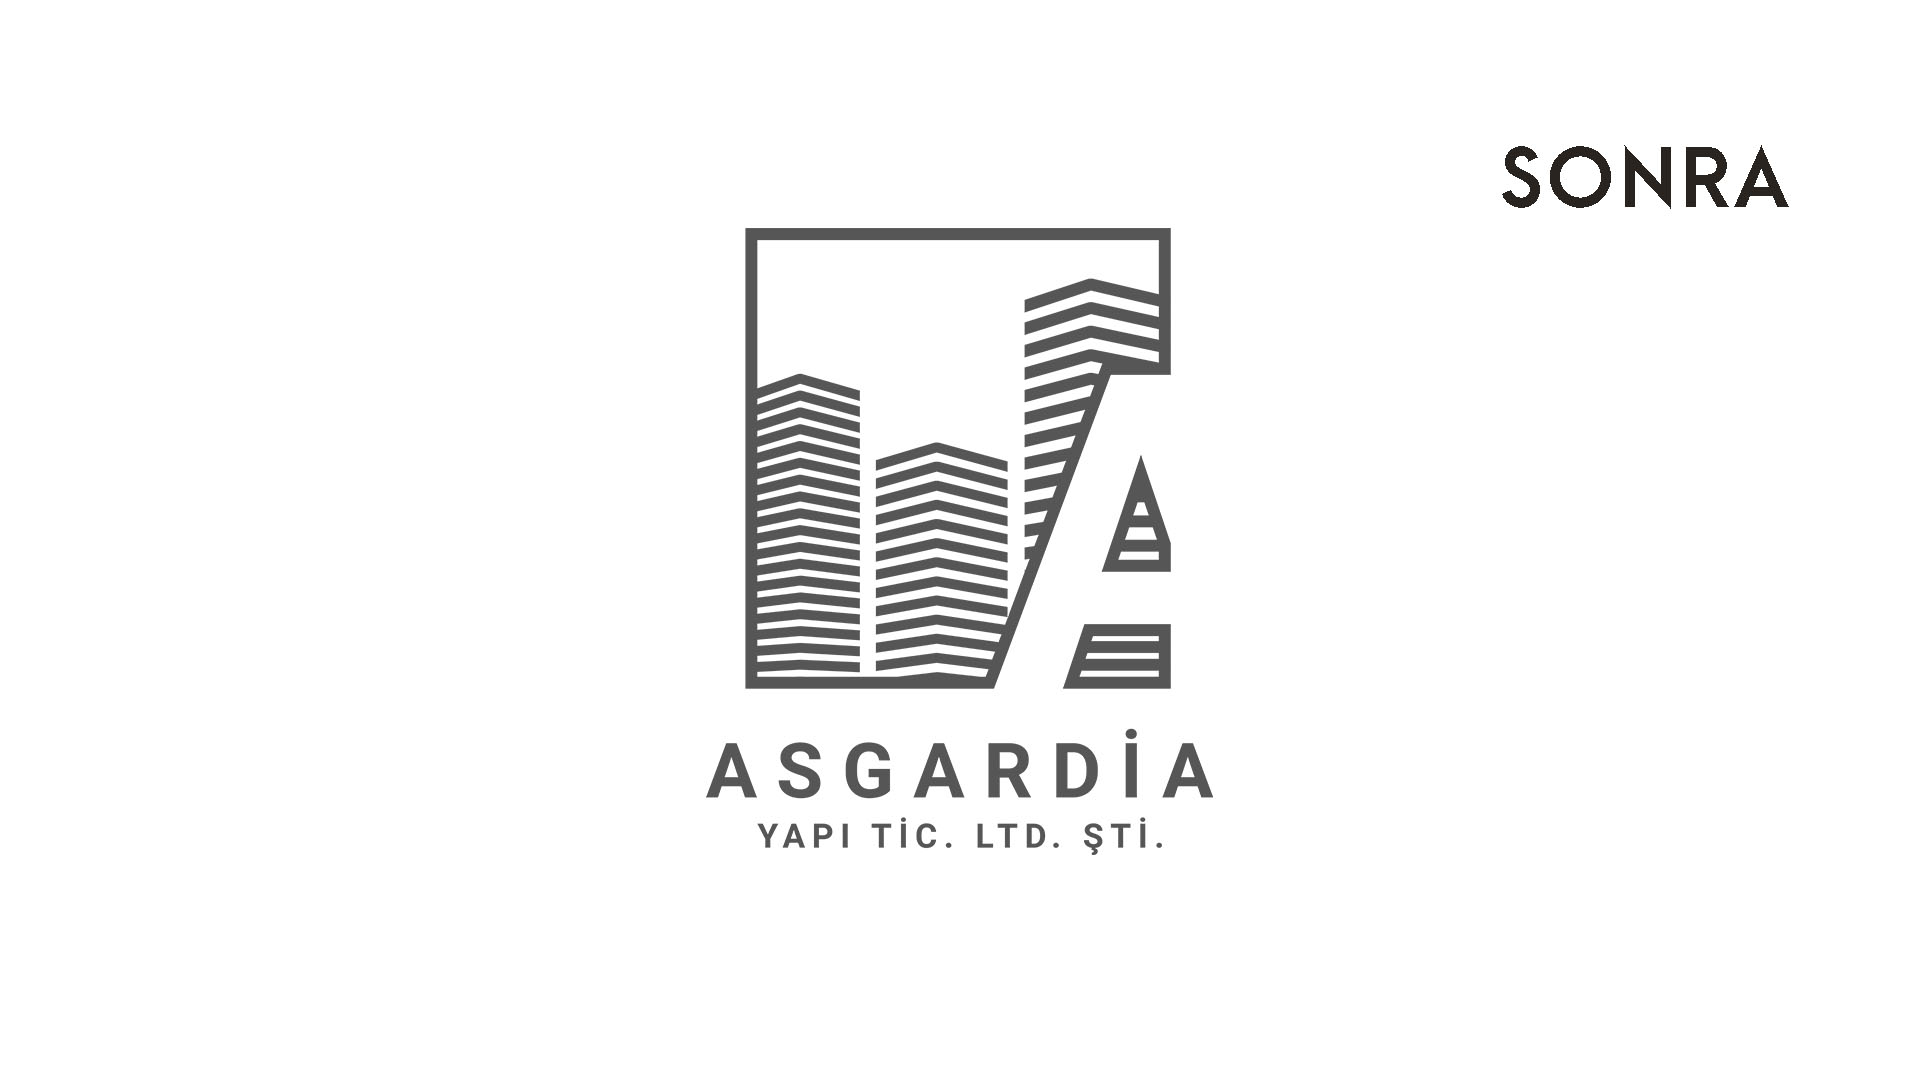 asgardia-sonra